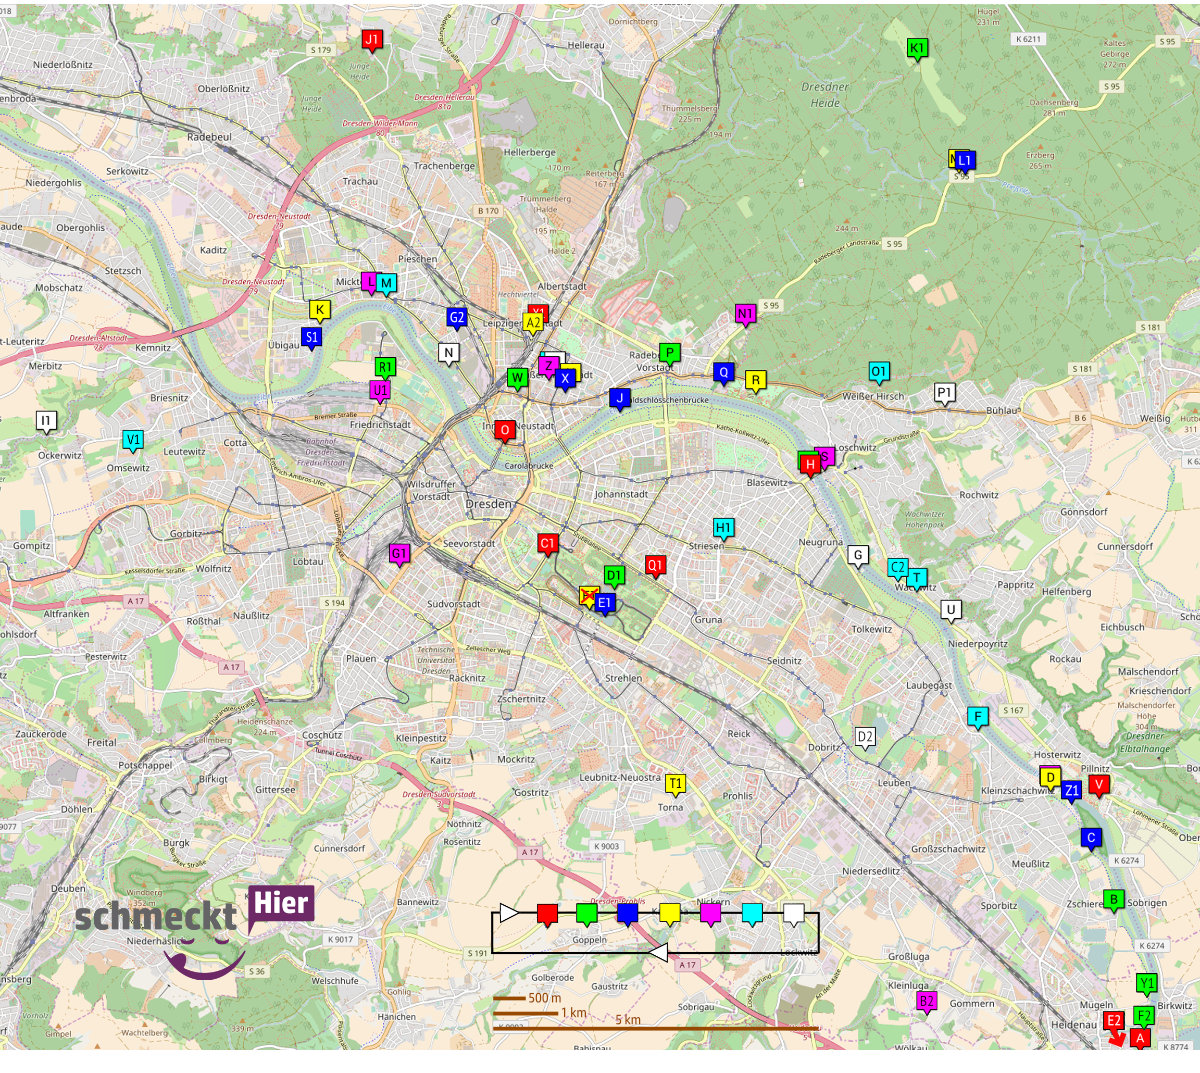 Biergärten in Heidenau, Pirna, Dresden, am Elberadweg und in der Stadt Übersichtskarte